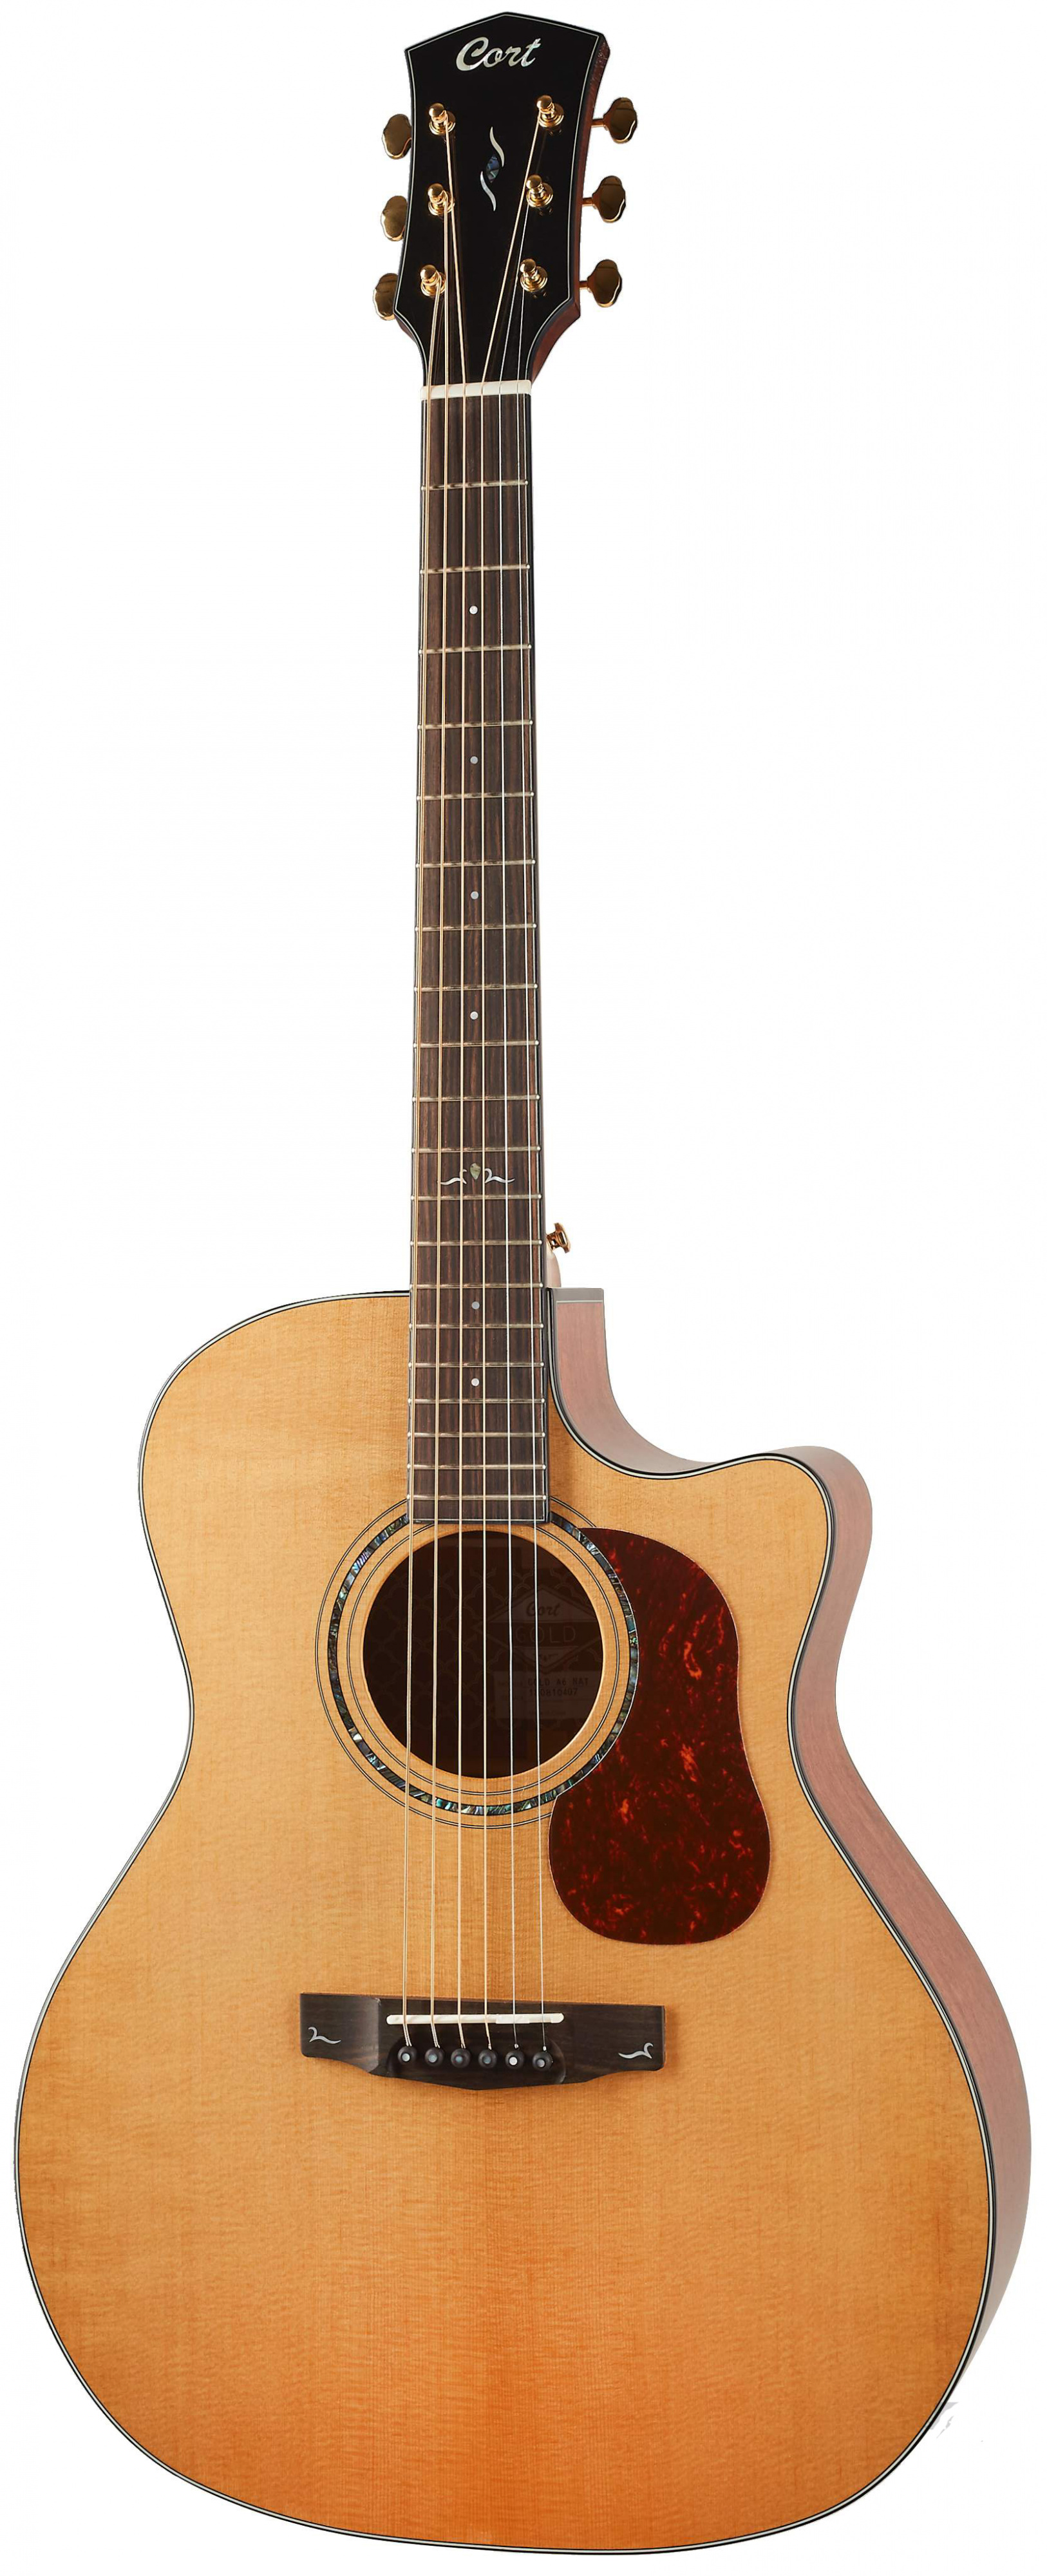 Электроакустические гитары Cort Gold-A6-WCASE-NAT электрогитары cort g250 spectrum wbag meg чехол в комплекте